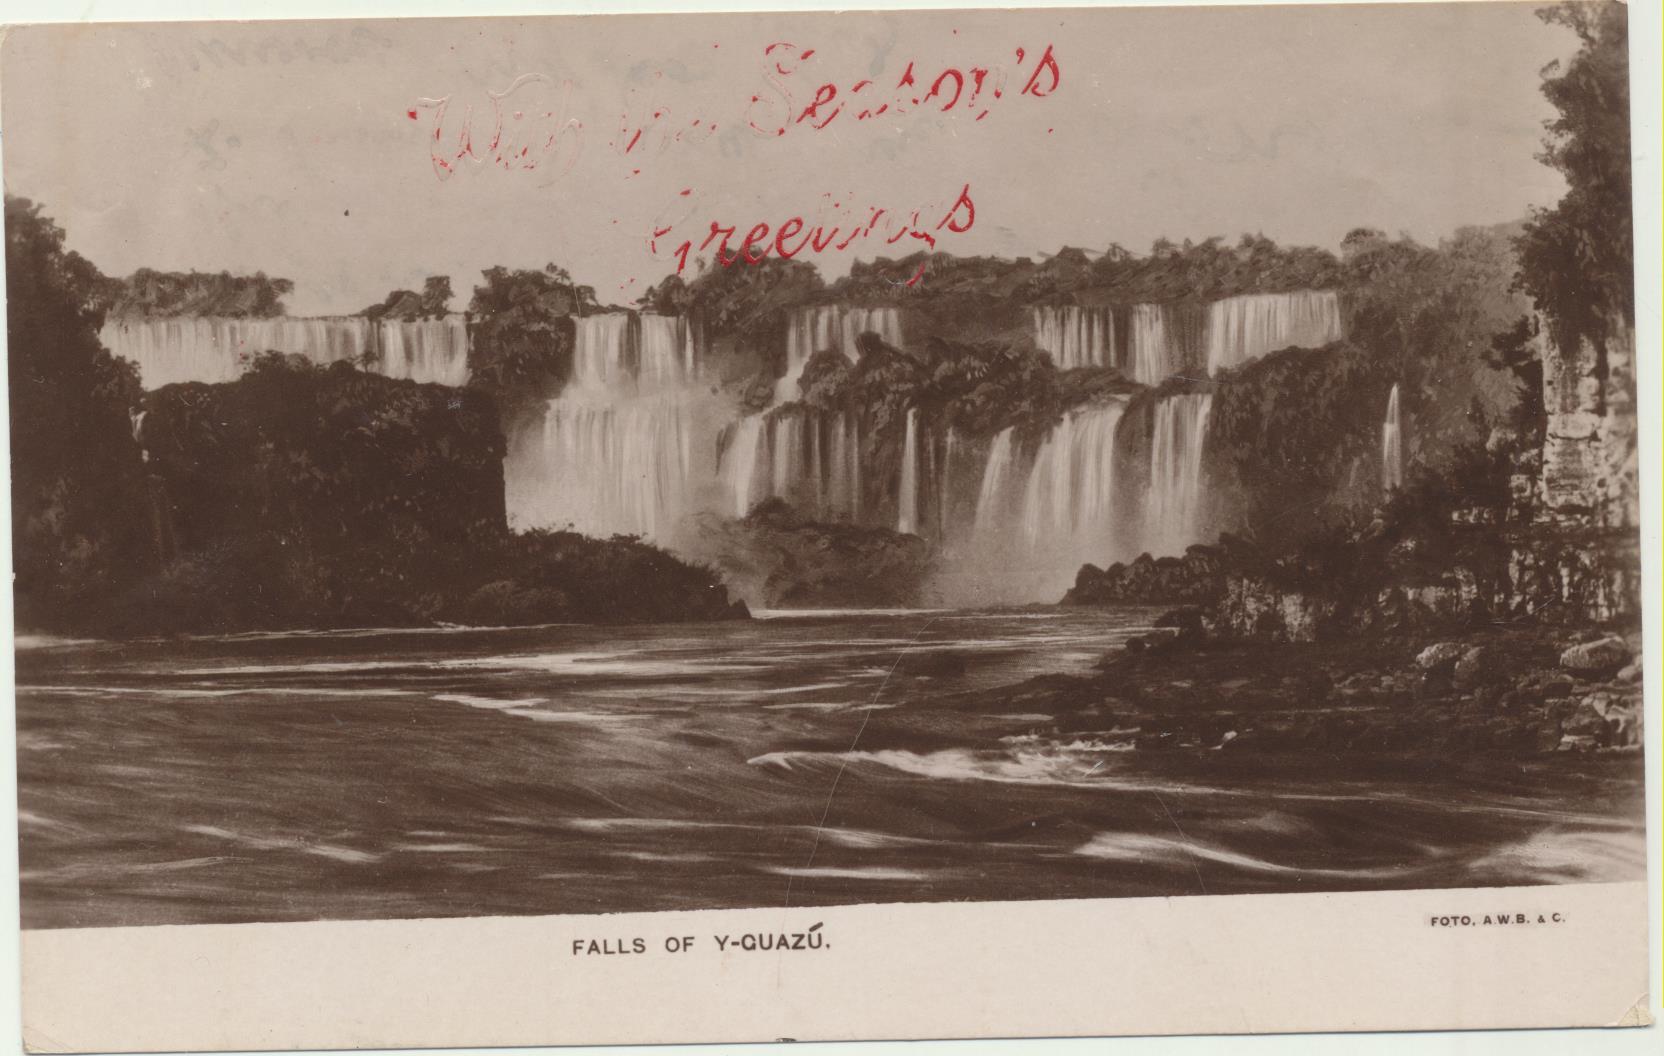 Argentina. Foto-Postal, Falls of Y-guazú (Cataratas de Yguazú) Franqueado y fechado en 191?